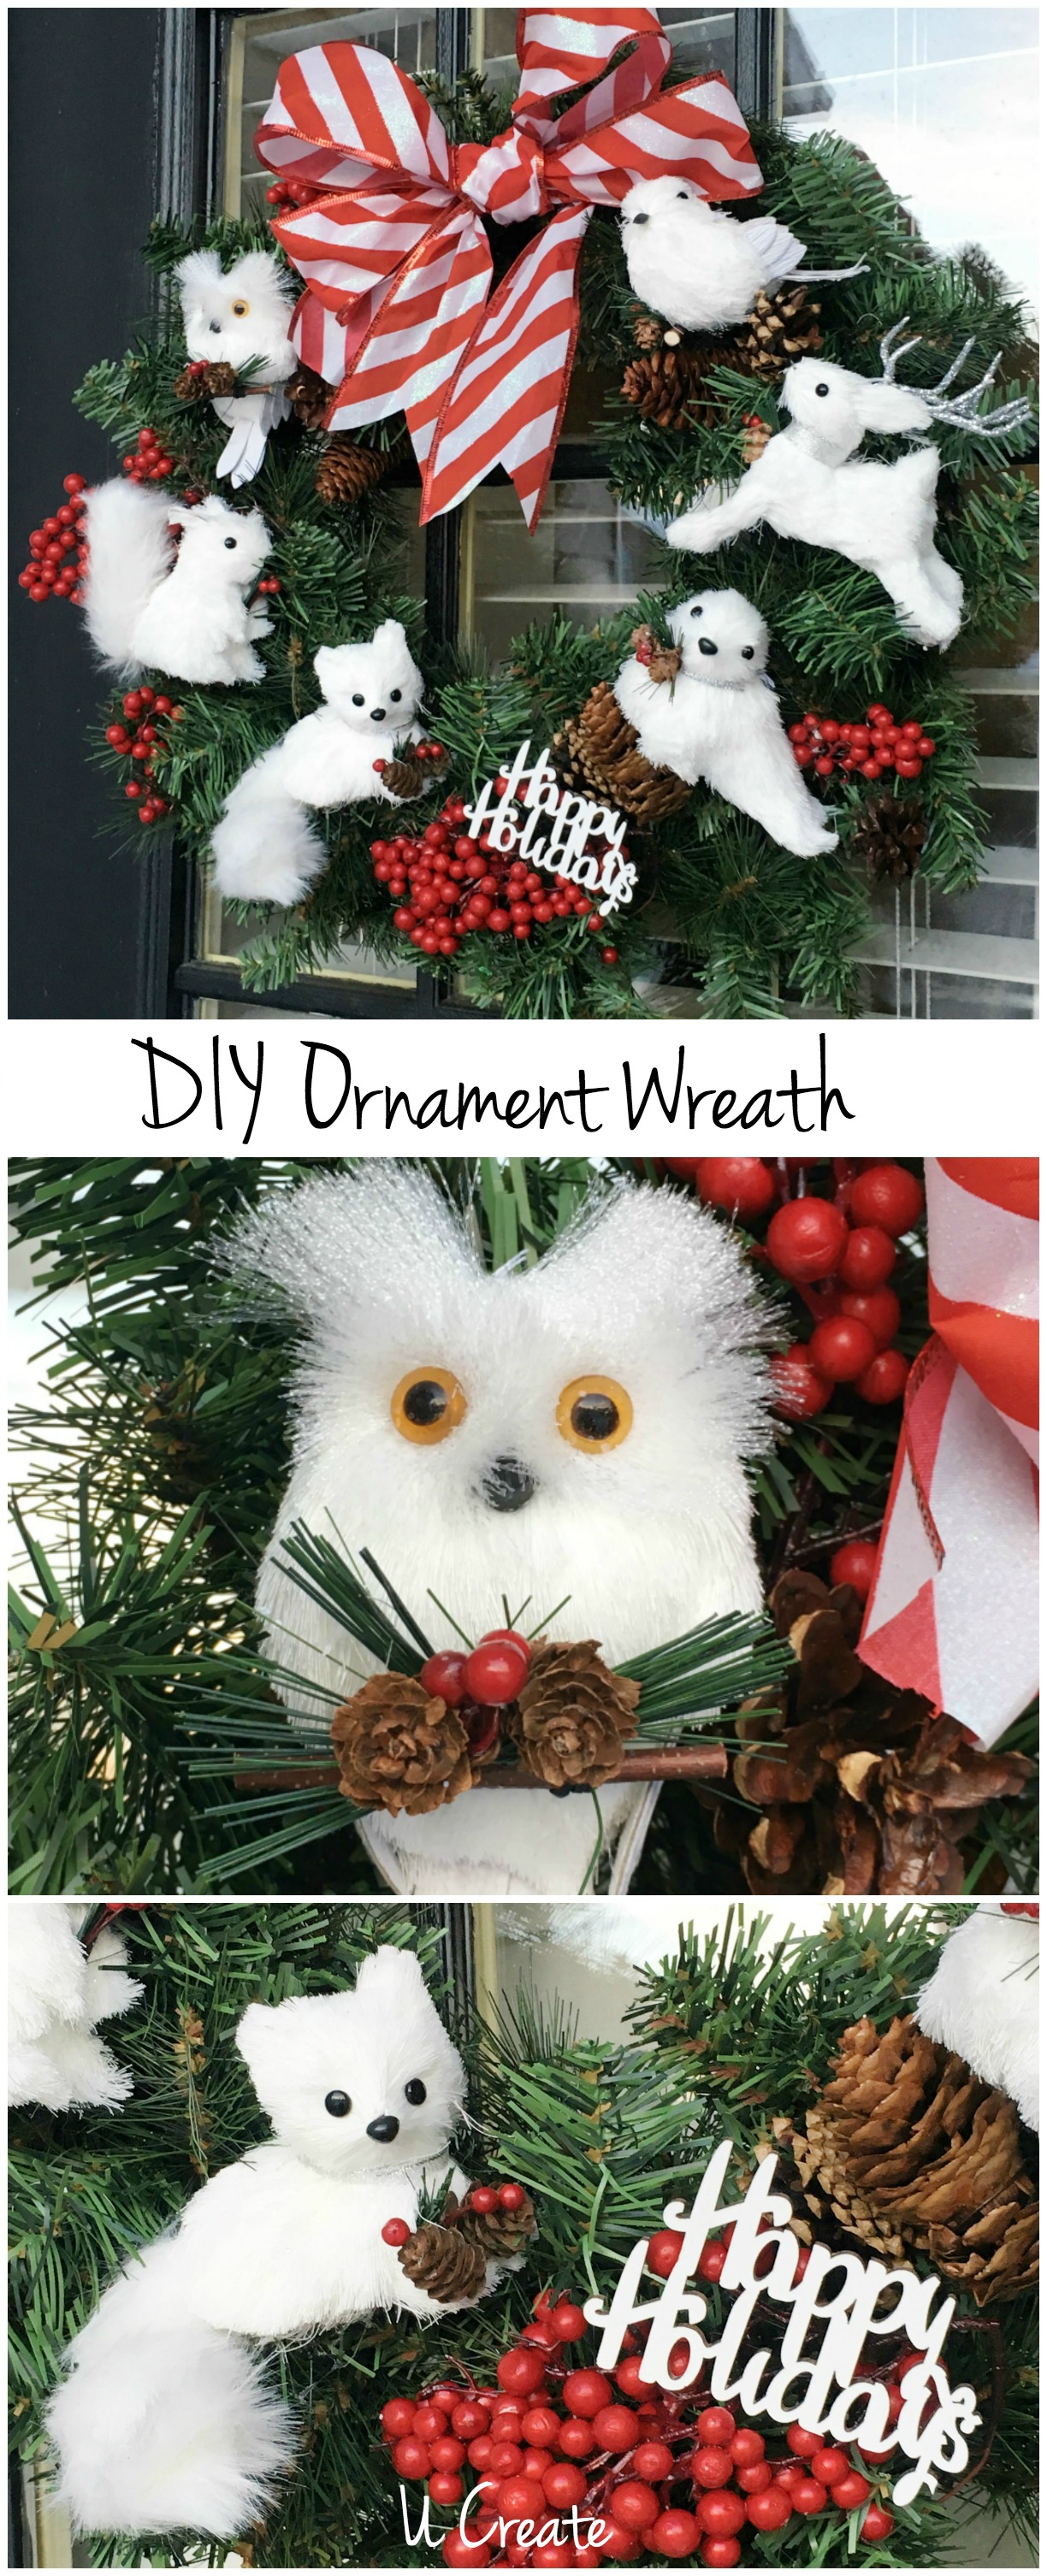 DIY Ornament Wreath by U Create